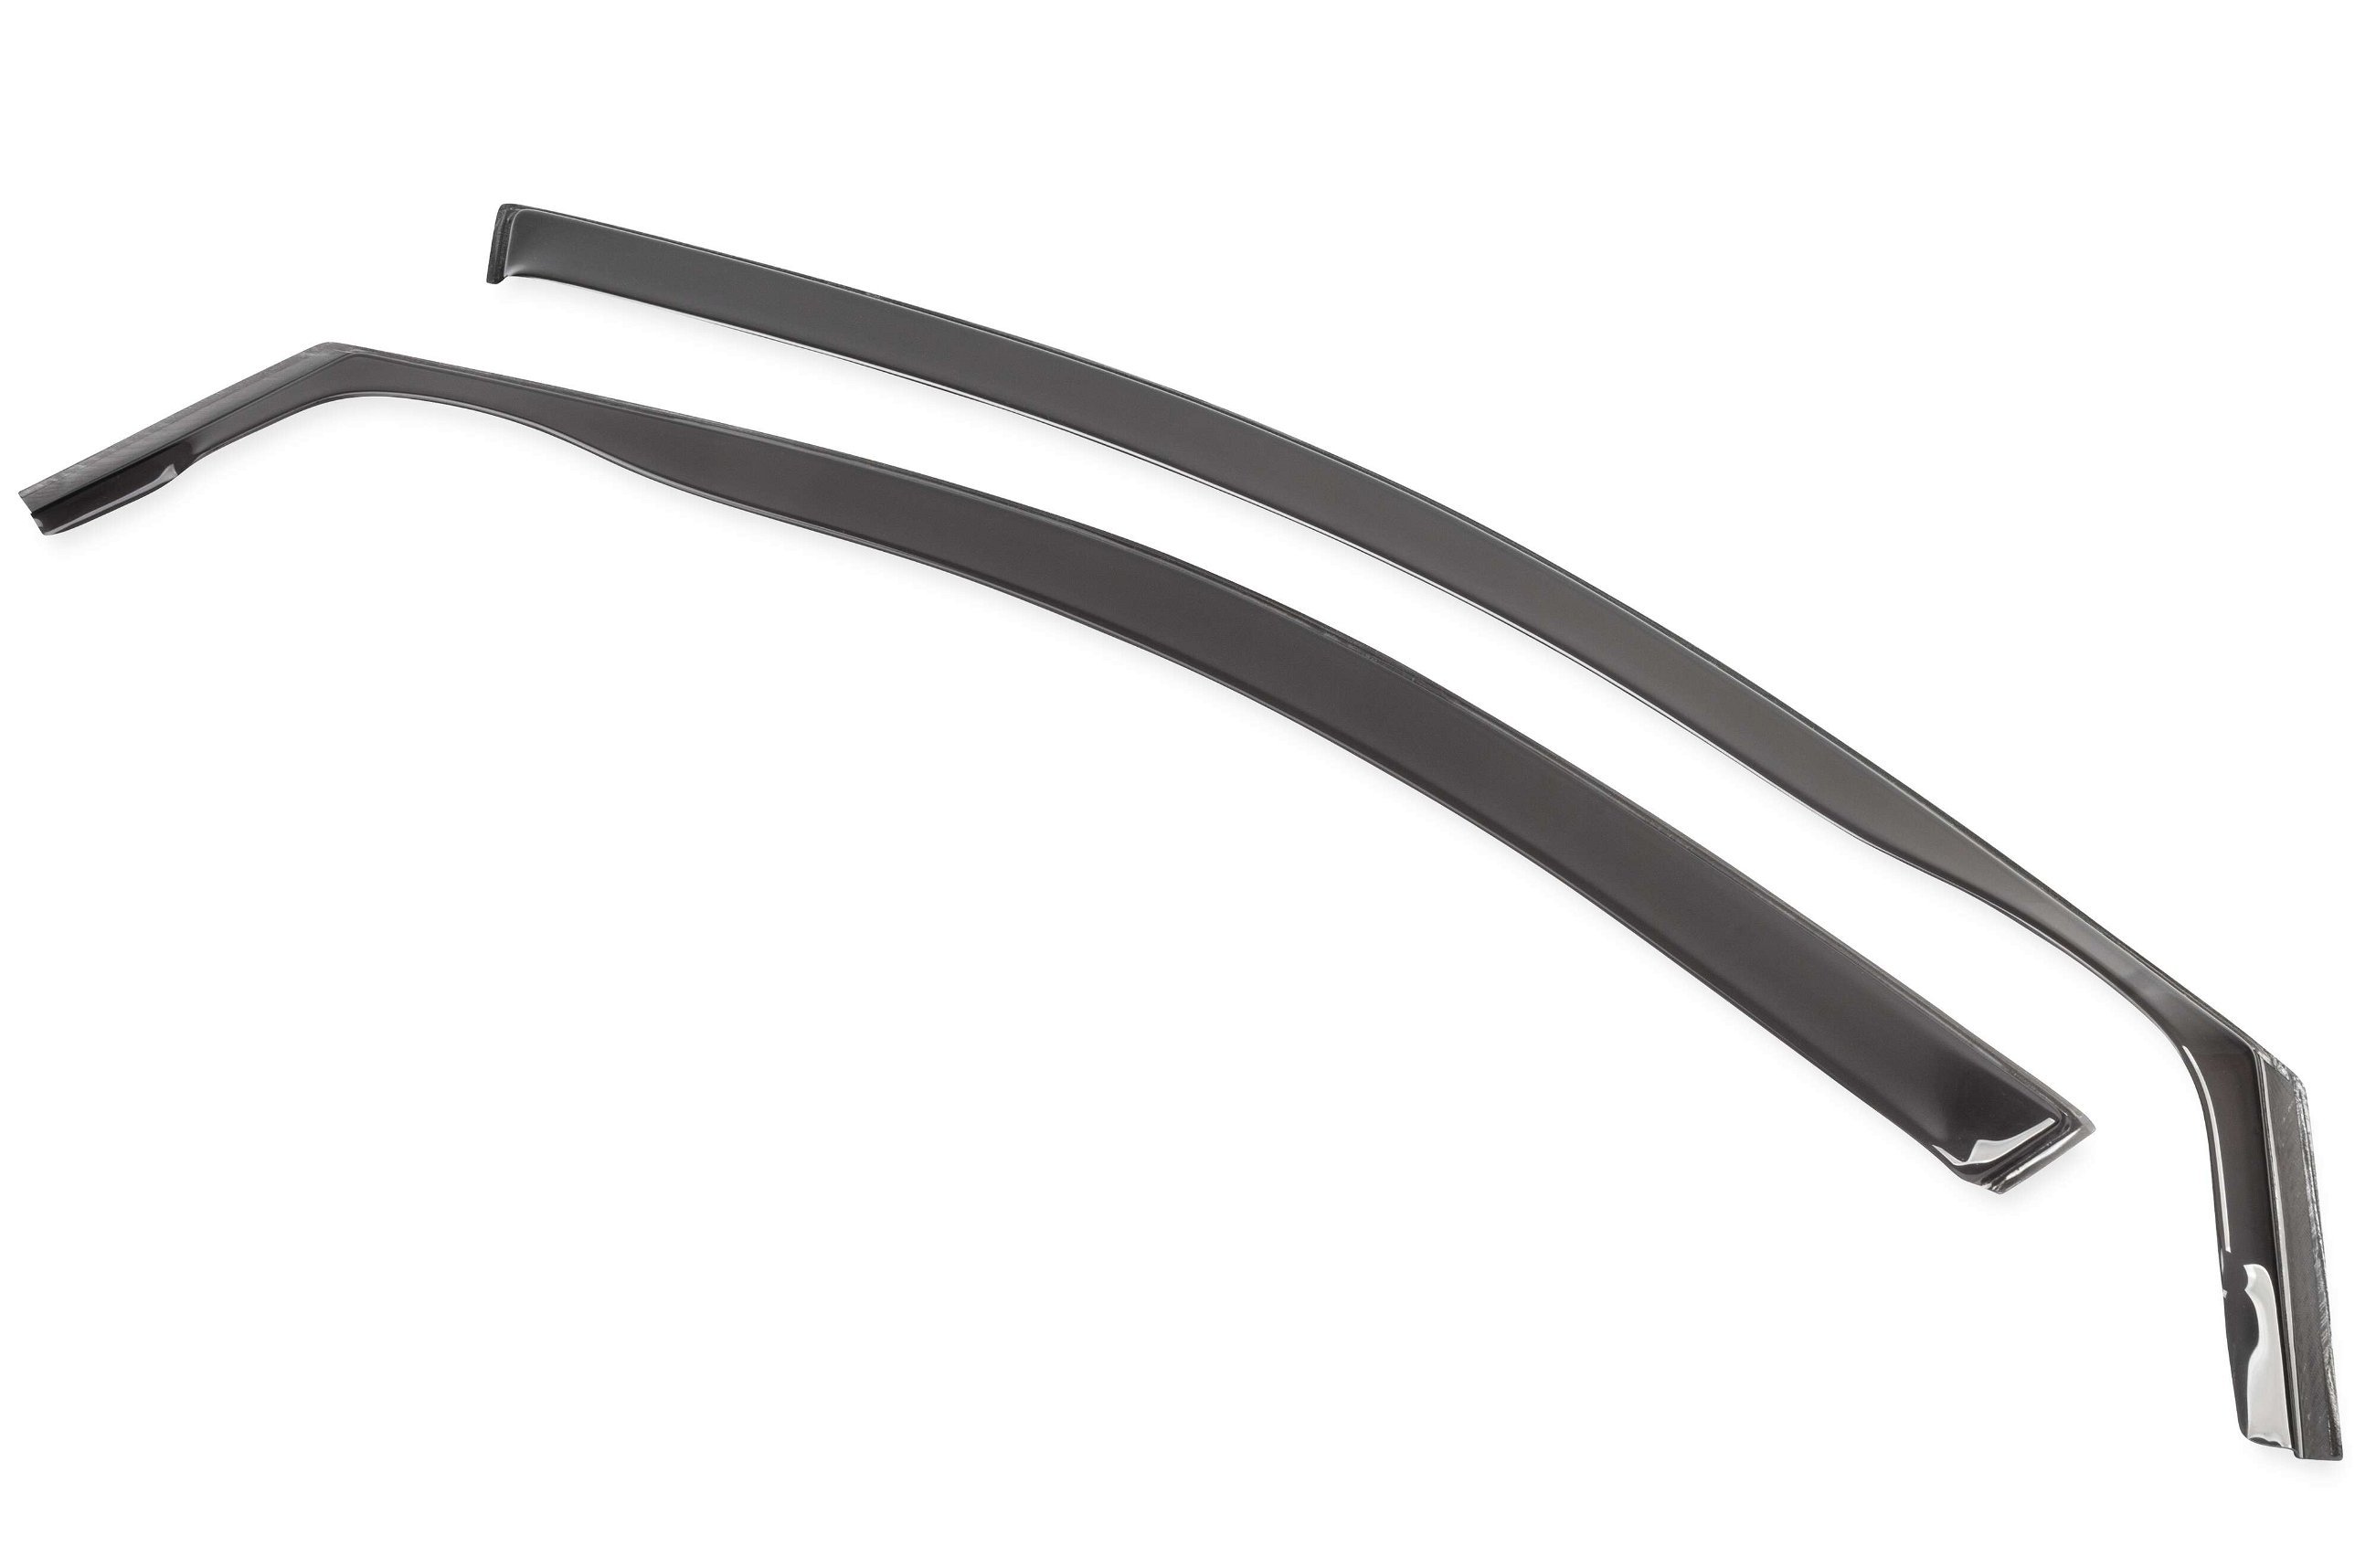 Windabweiser für Opel Corsa E 09/2014-Heute, 5-Türer, Passform Windabweiser Set für Fahrer- und Beifahrerseite, 2 Stück